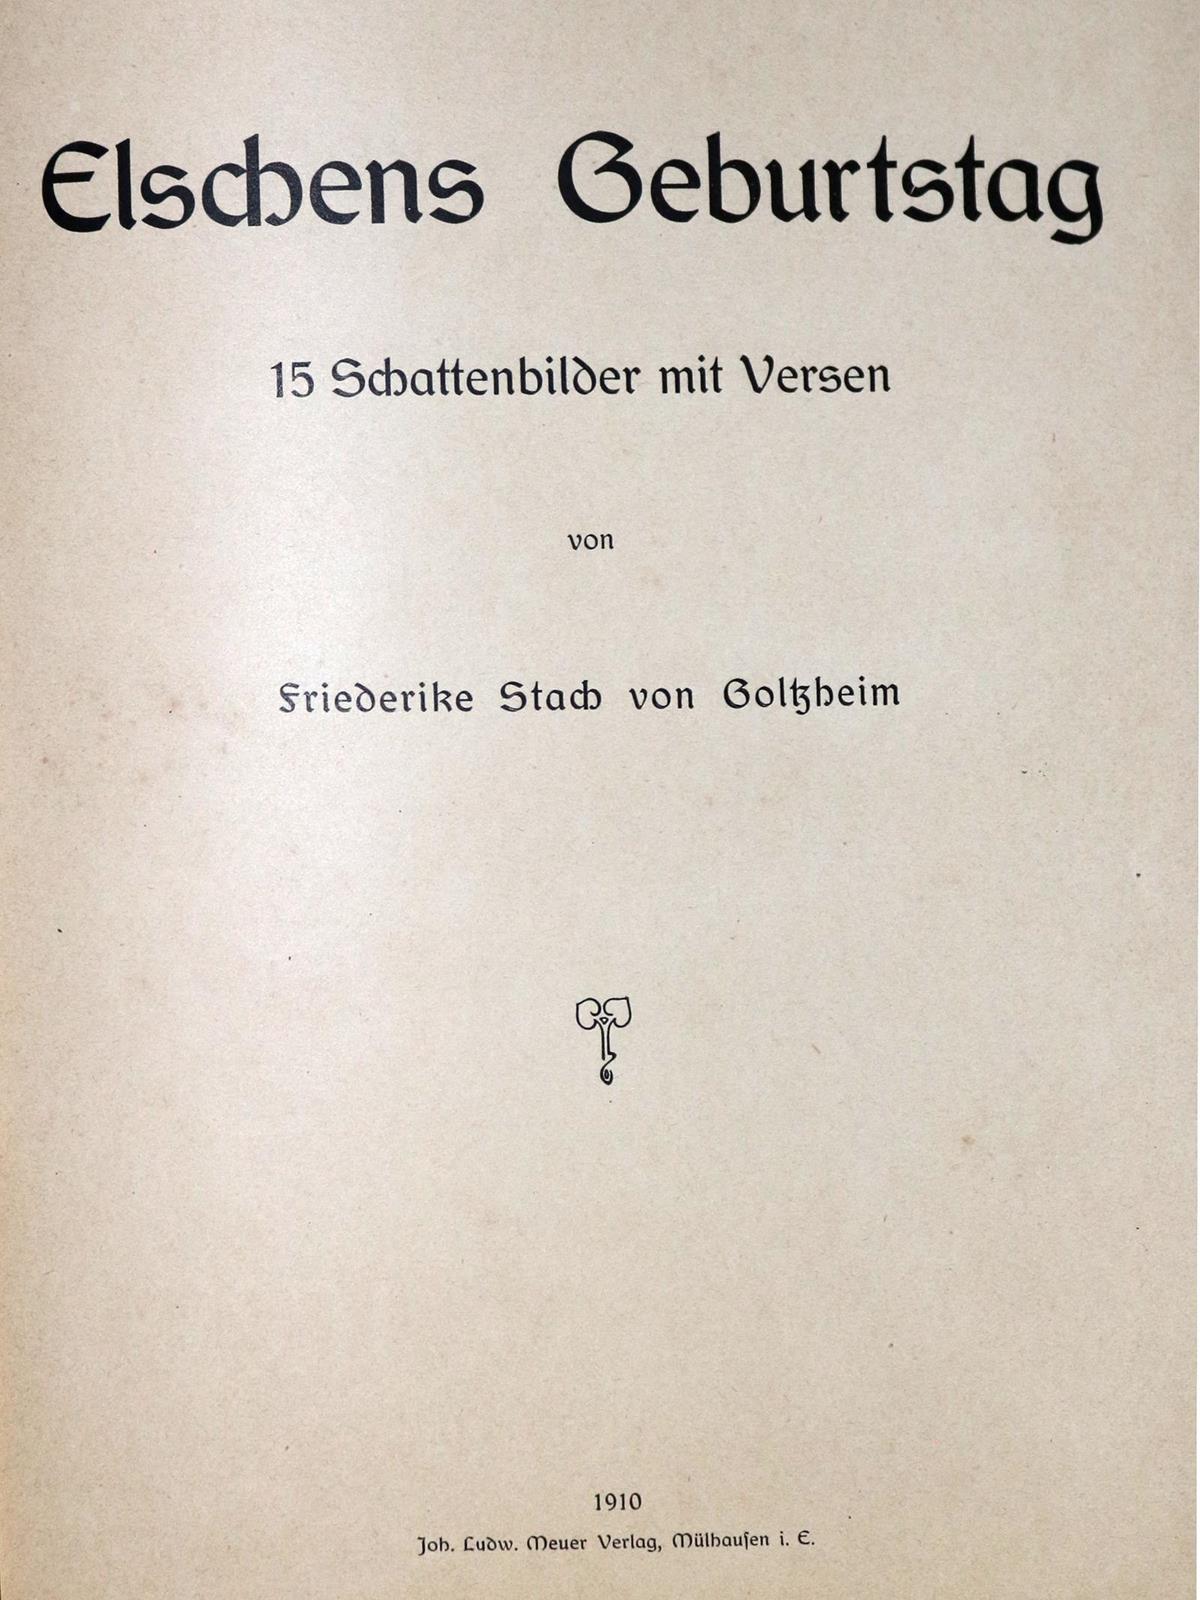 Stach von Goltzheim,F. | Bild Nr.1